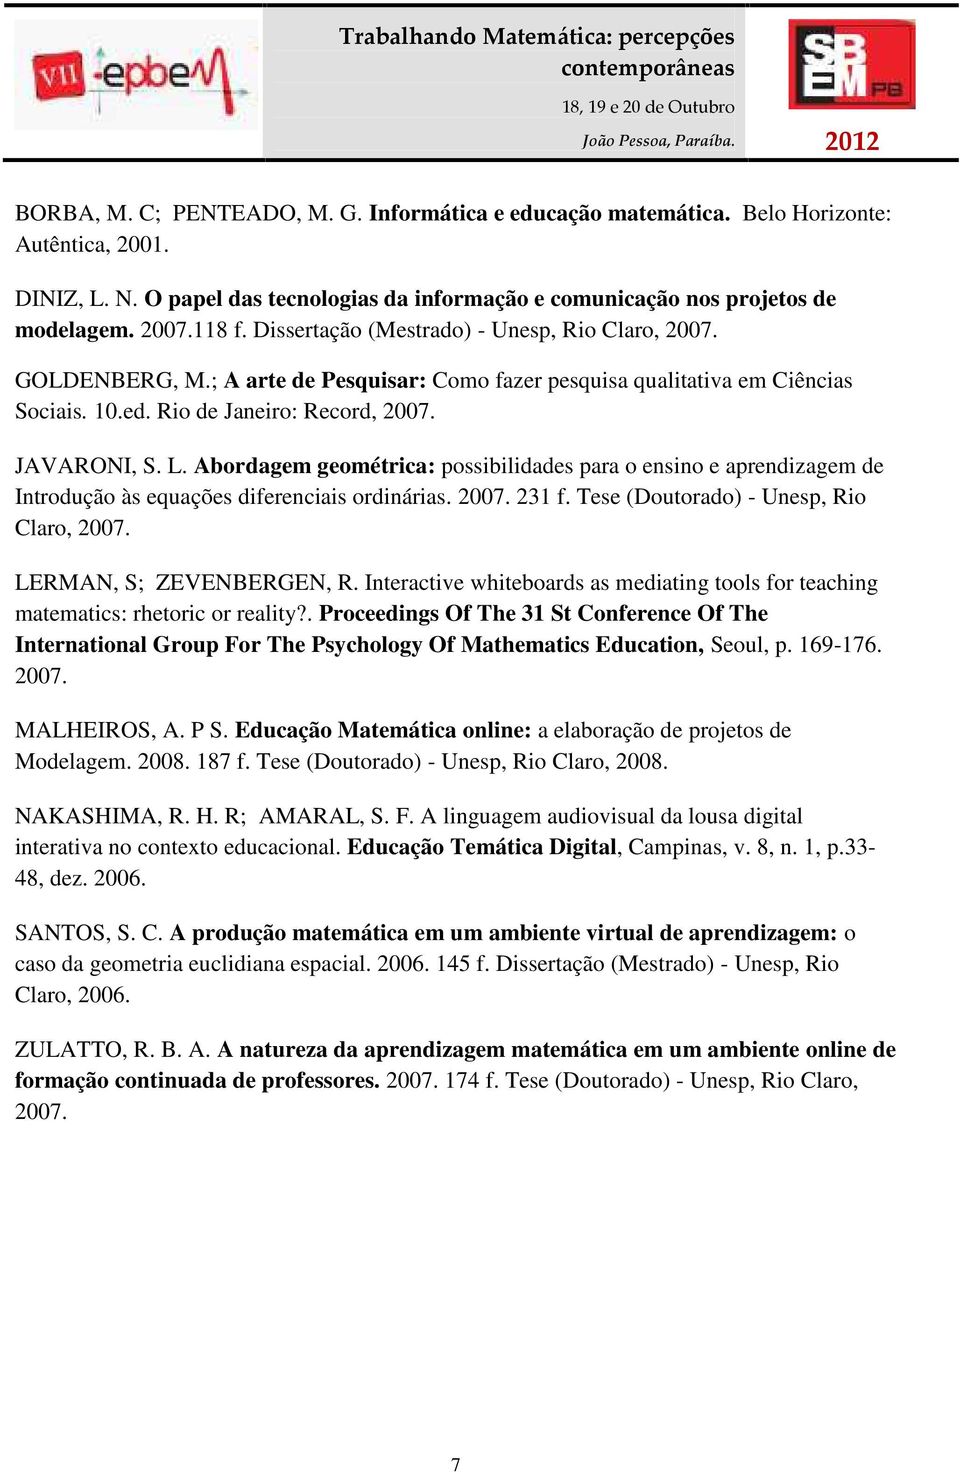 Abordagem geométrica: possibilidades para o ensino e aprendizagem de Introdução às equações diferenciais ordinárias. 2007. 231 f. Tese (Doutorado) - Unesp, Rio Claro, 2007. LERMAN, S; ZEVENBERGEN, R.